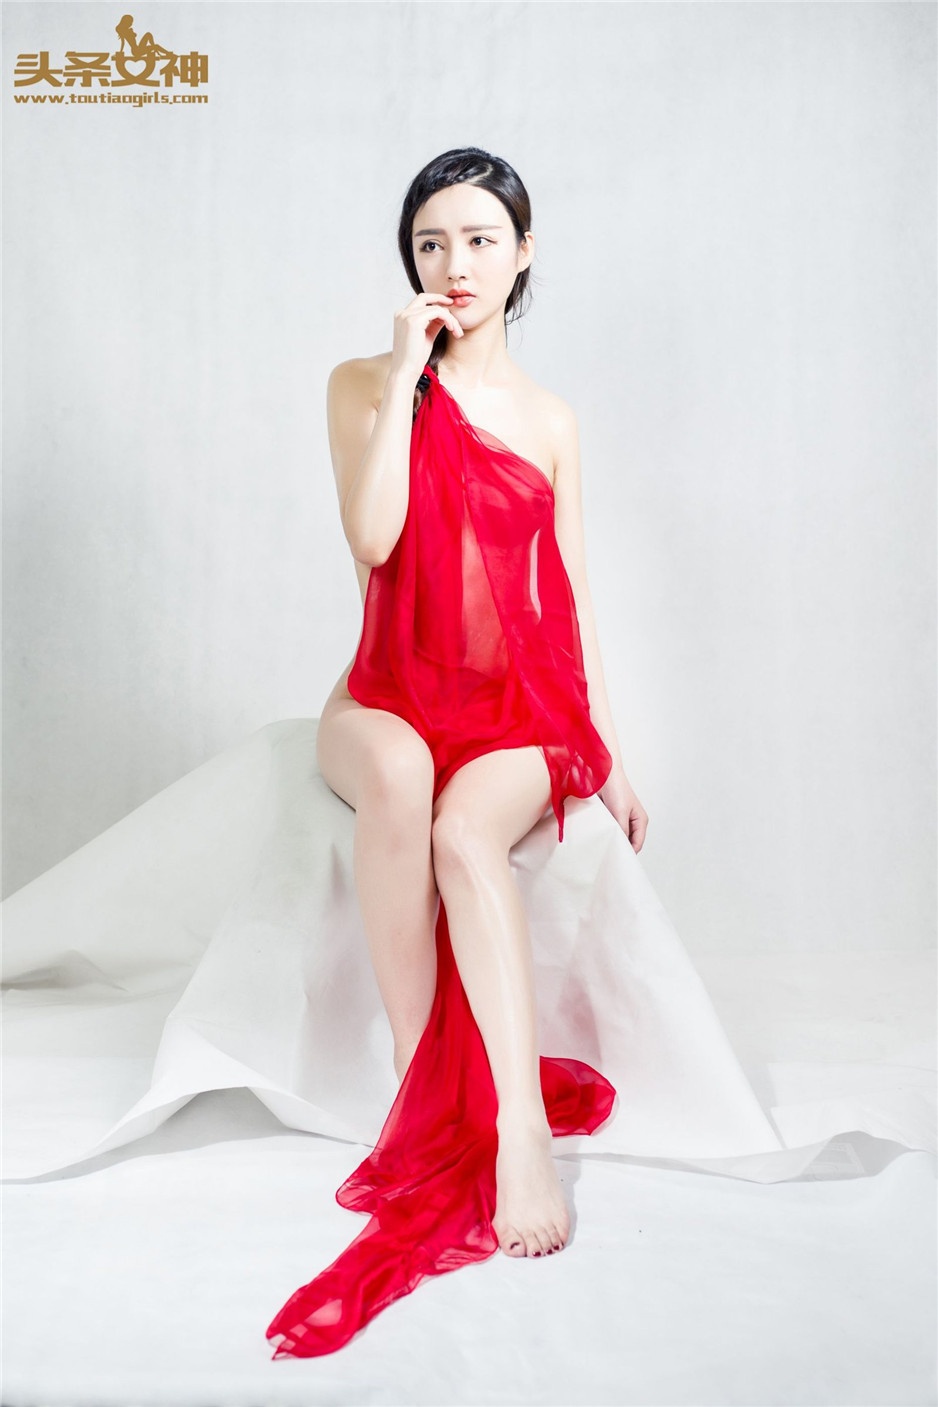 中国美女郭婷婷透明薄纱人体艺术图片